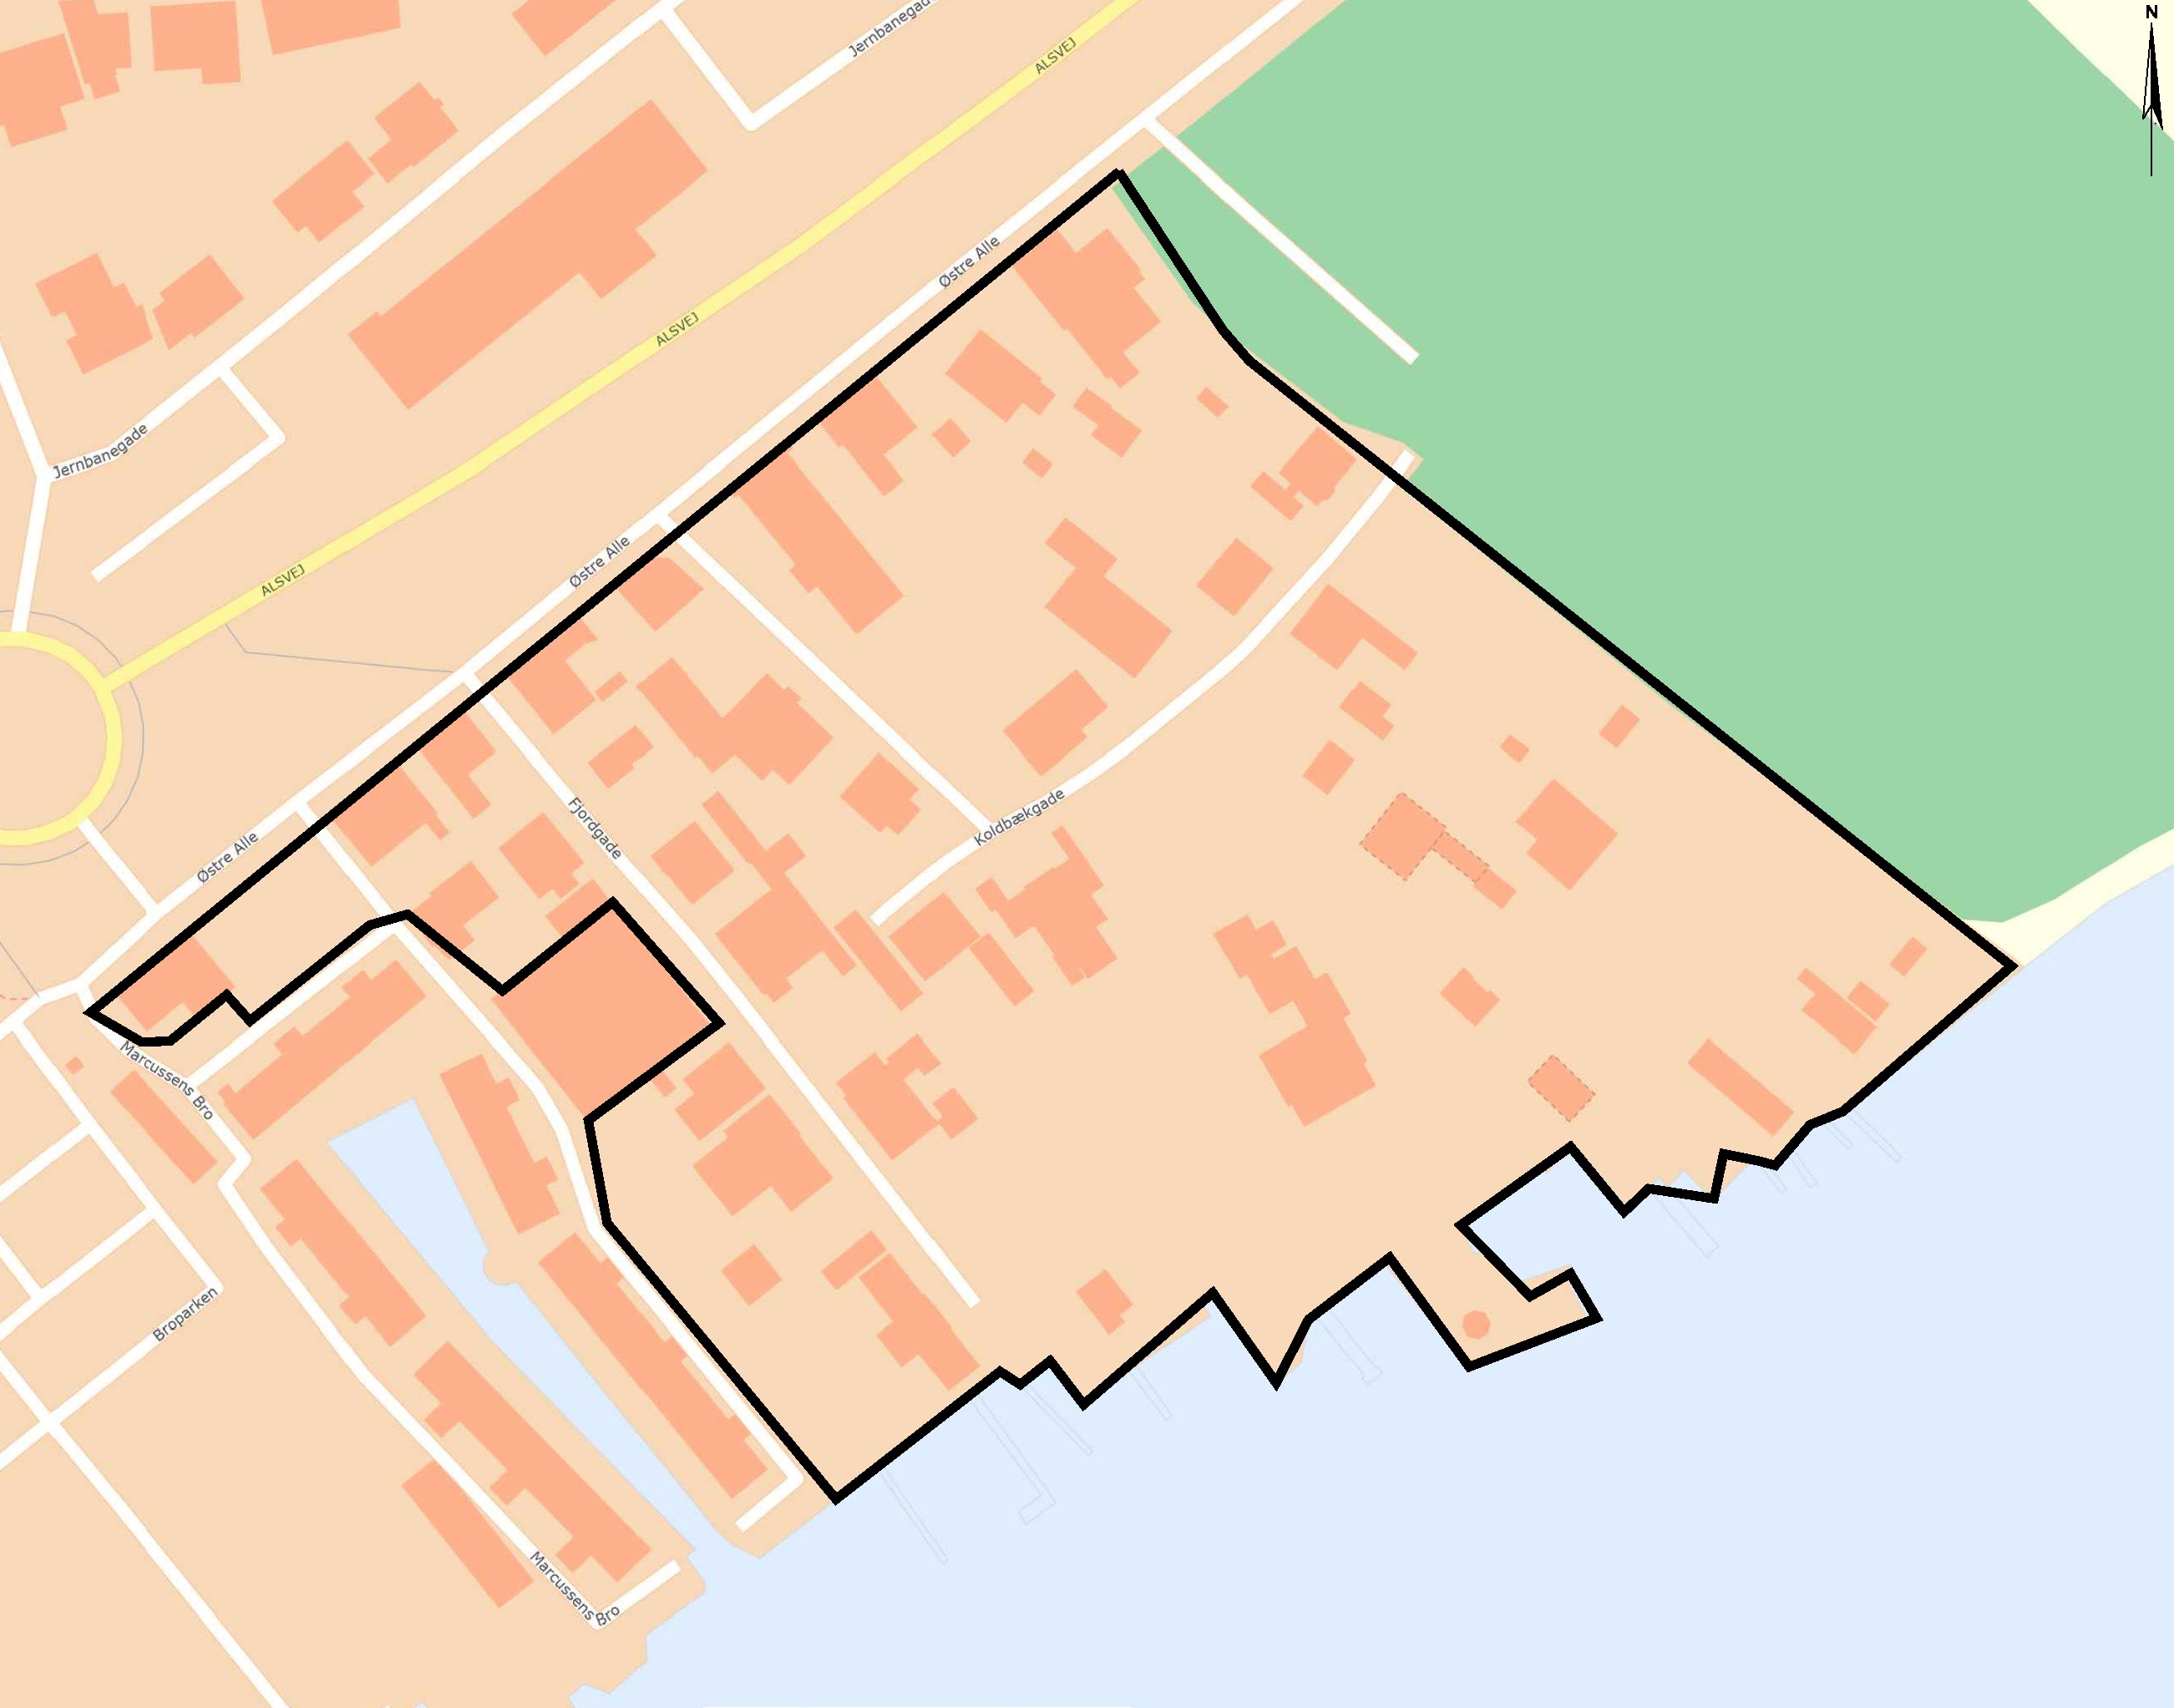 Separatkloakering af Fjordgade, Koldbækgade og ejendommene på Østre Allé 16-34, Hadsund